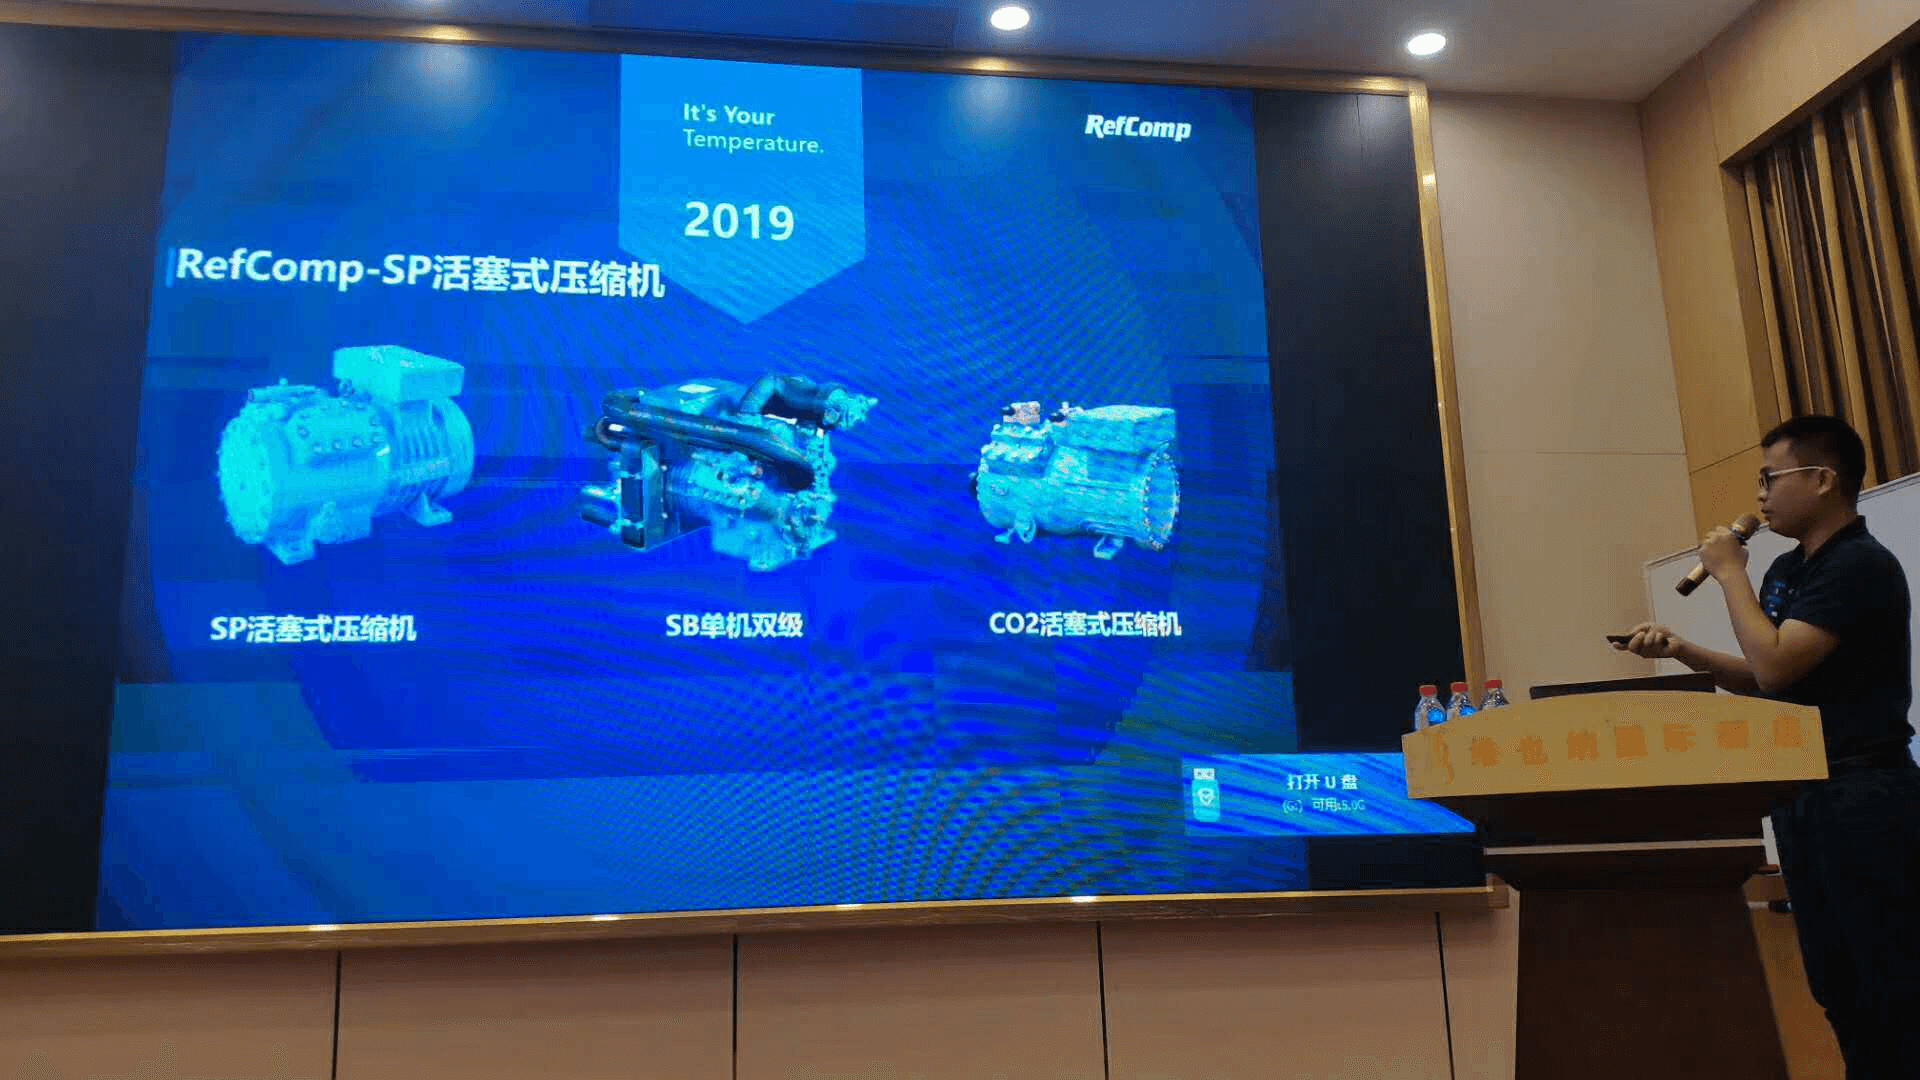 2019广雪-大卡-莱富康产品技术交流会-会议报道